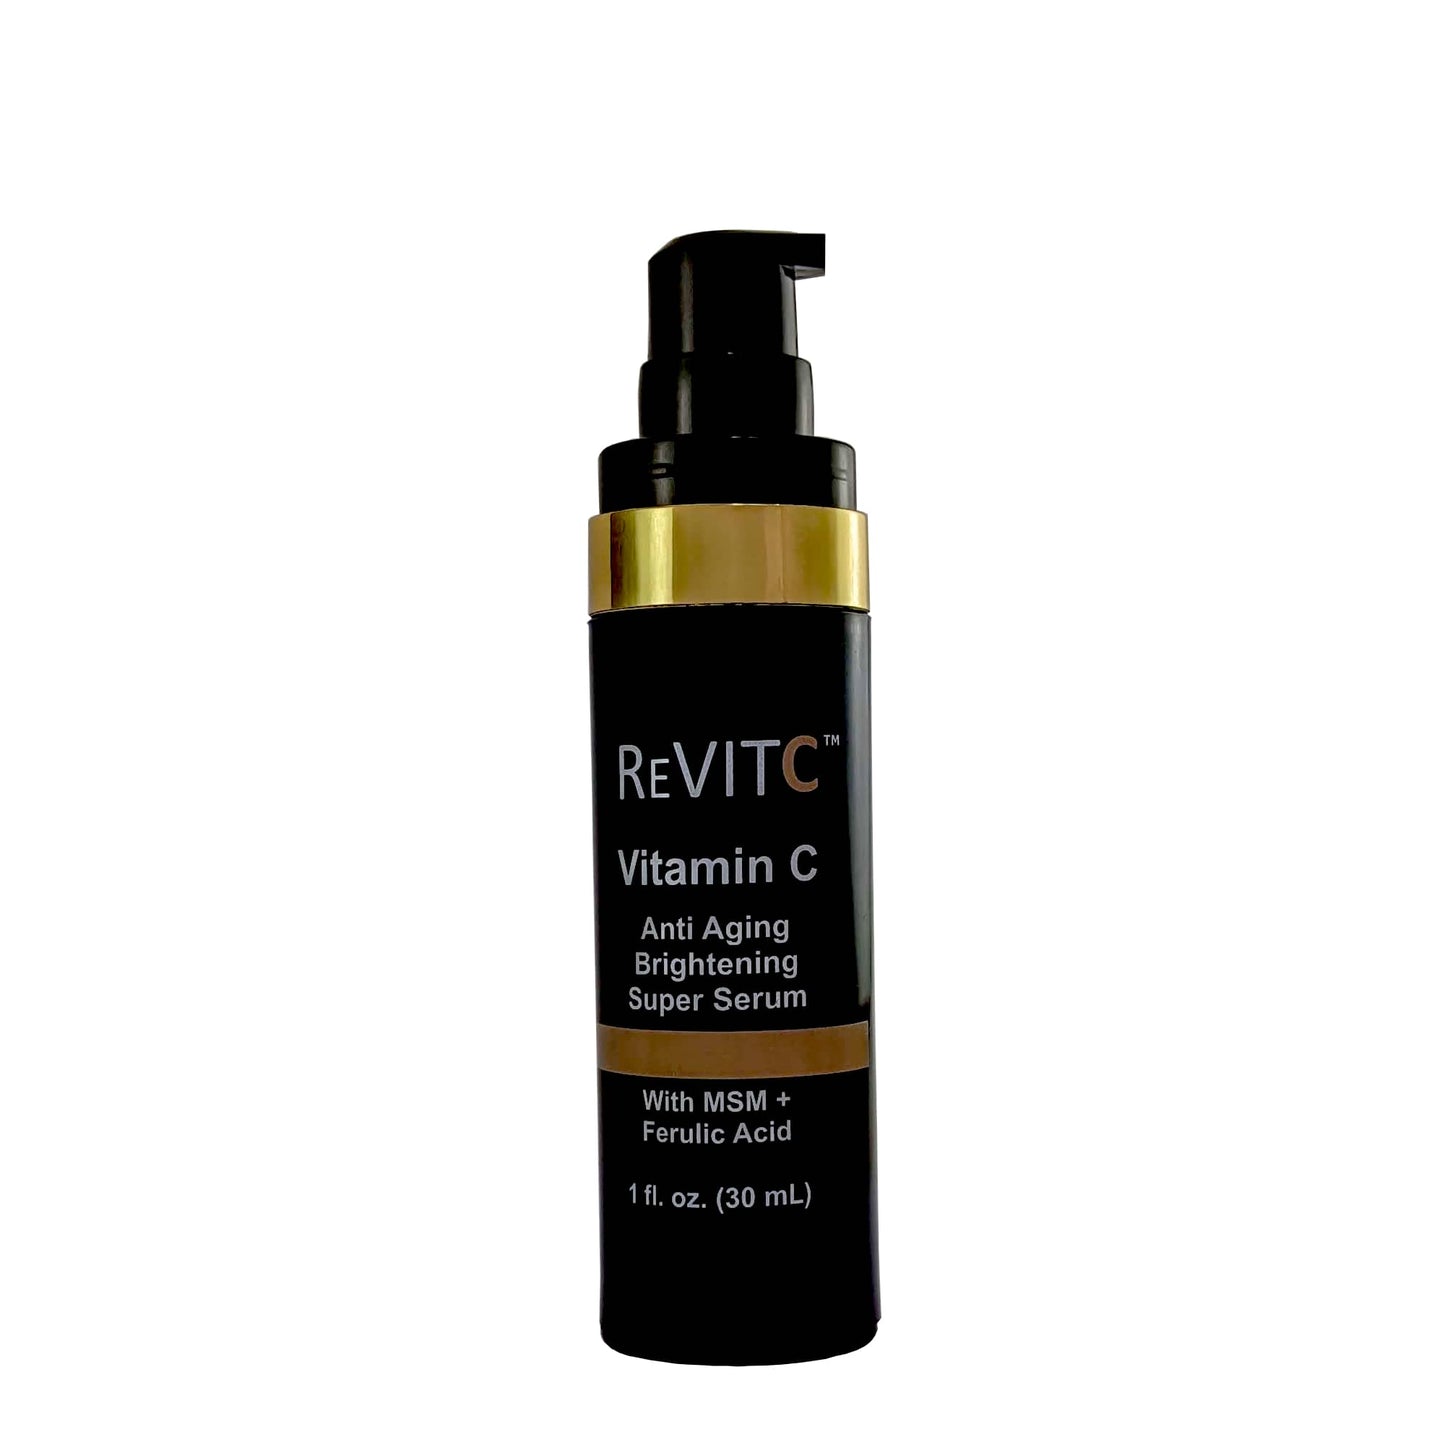 ReVITC Vitamin C Anti Aging Super Serum